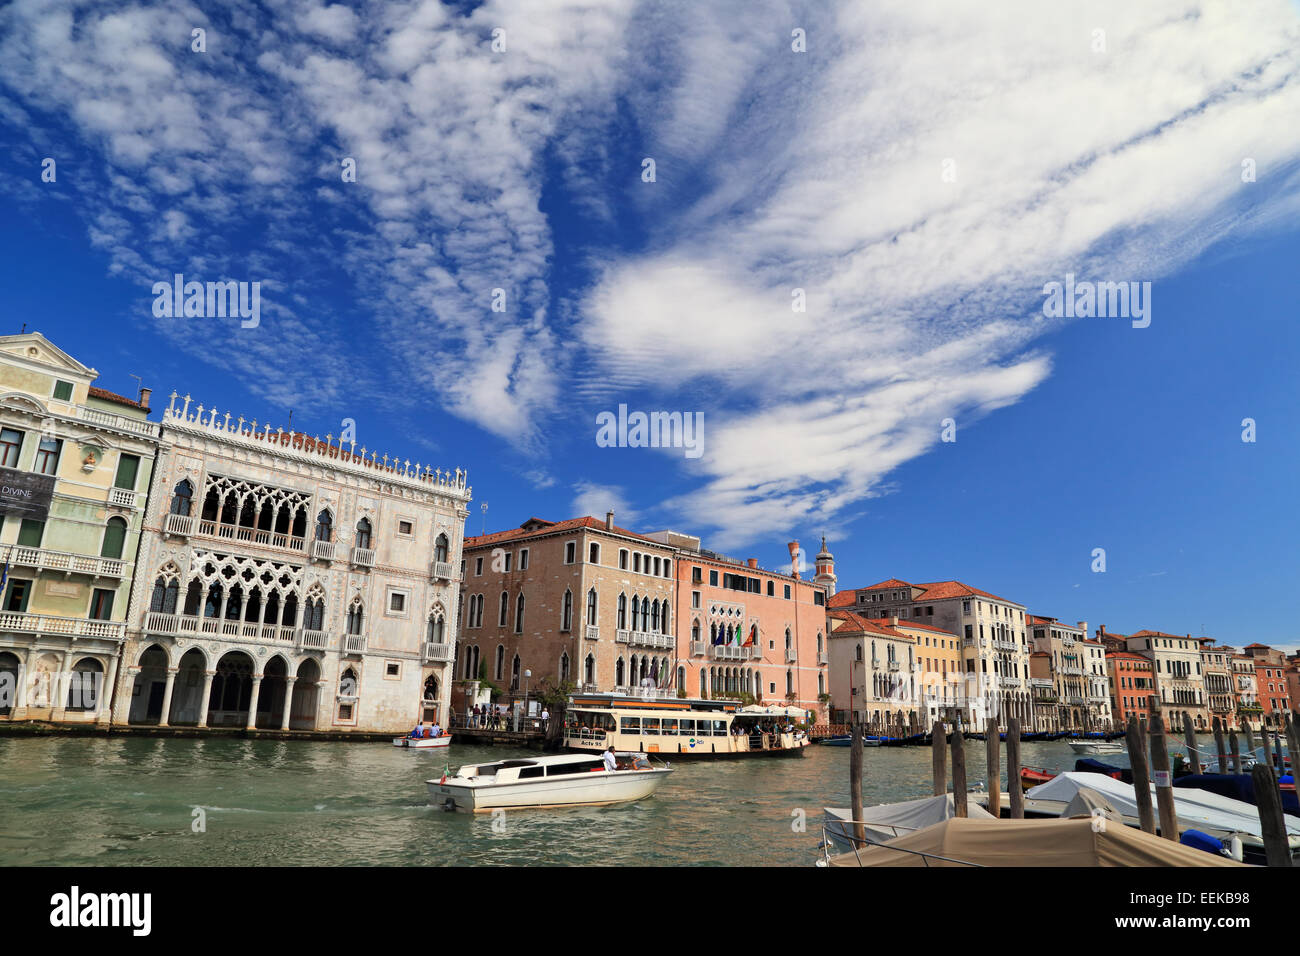 Grand Canal Grande mit dem Palazzo Ca' d'Oro, Venice, Italien, - Stockfoto